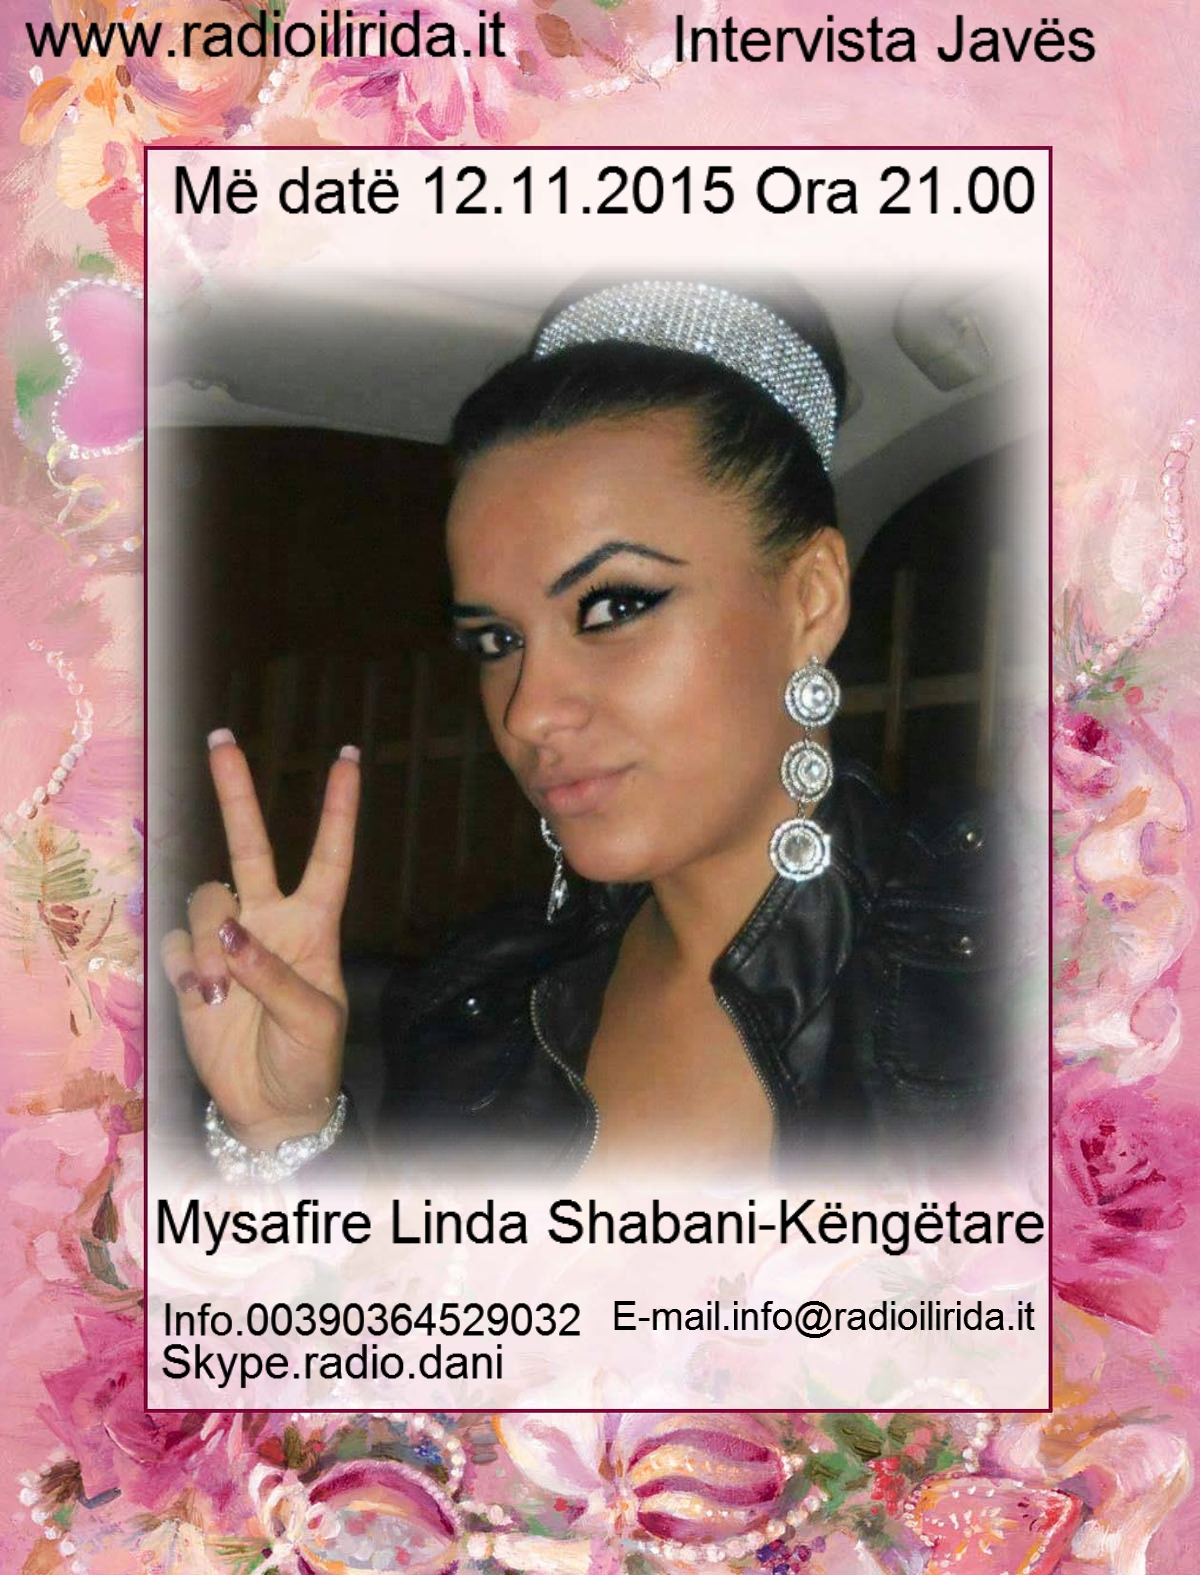 Ju informoj qe 12.11.2015 Ora 21.00 mysafire do te jete Këngëtarja Linda Shabani